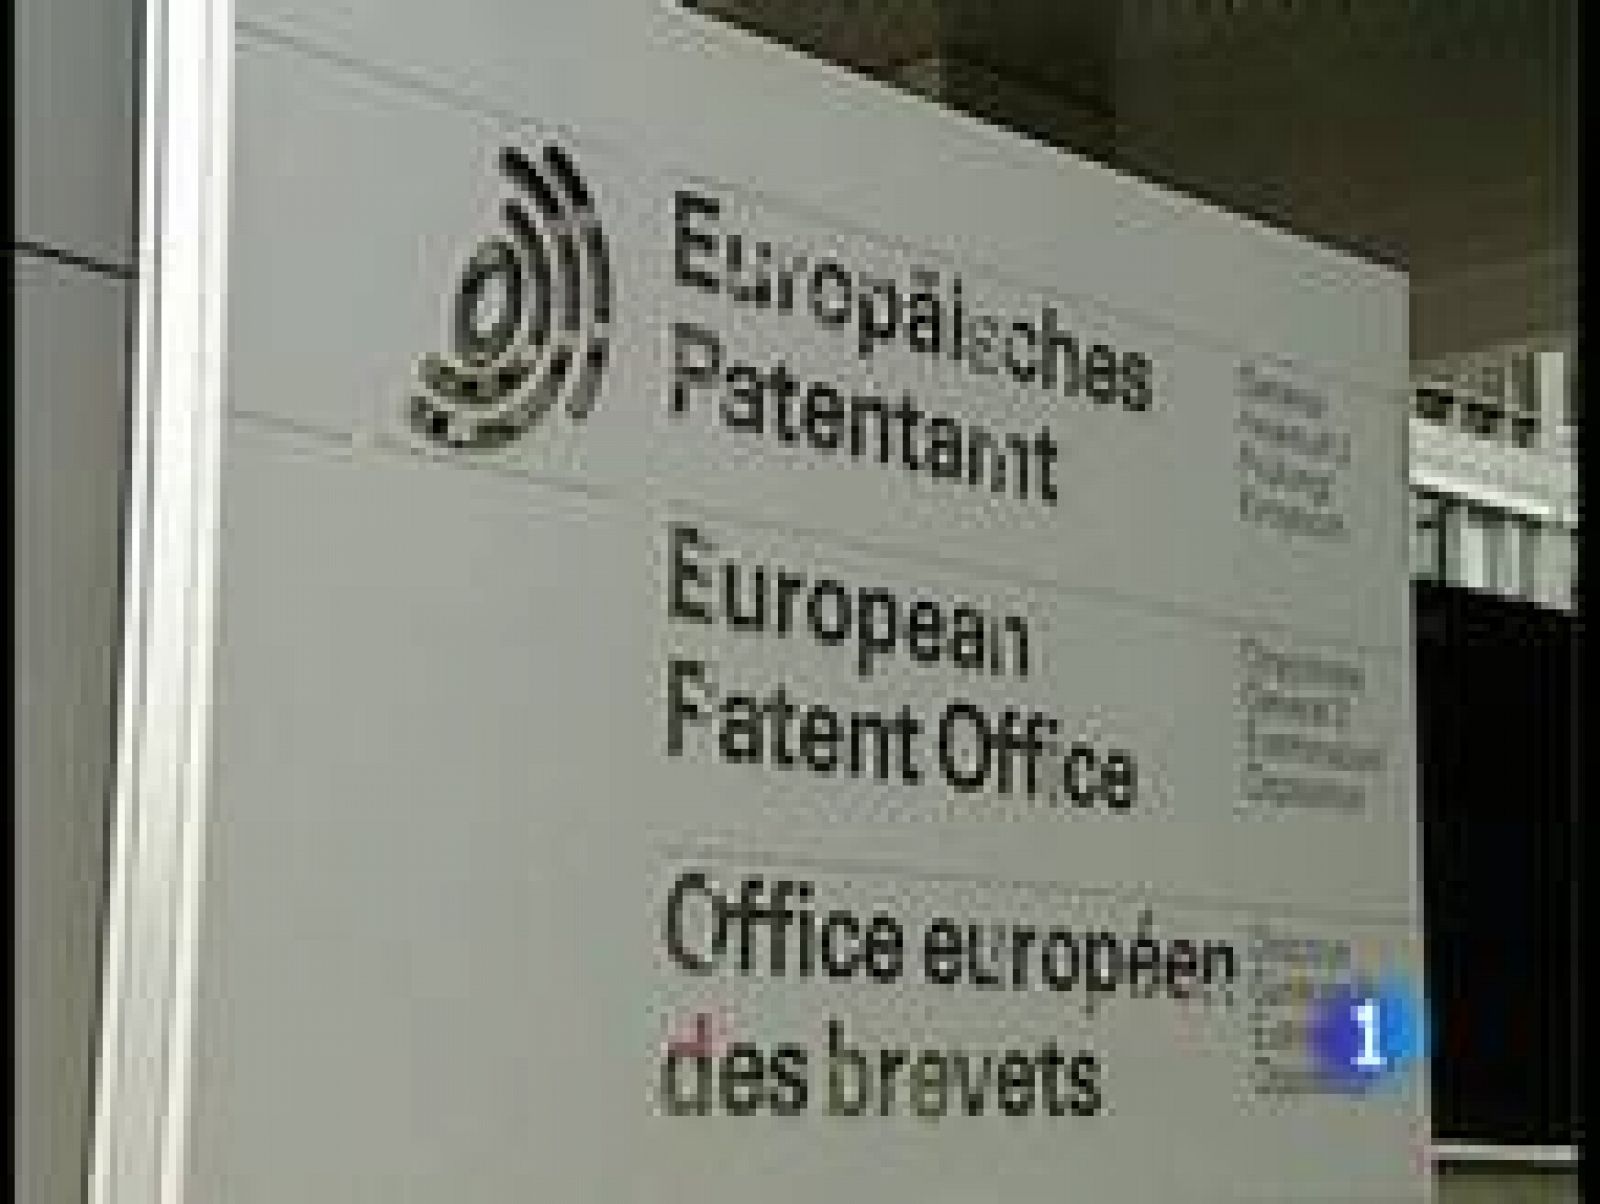  La alianza franco-alemana ha promovido que las patentes con las que registran las productos y las empresas europeas, se hagan sólo en los idiomas inglés, francés, y alemán. 